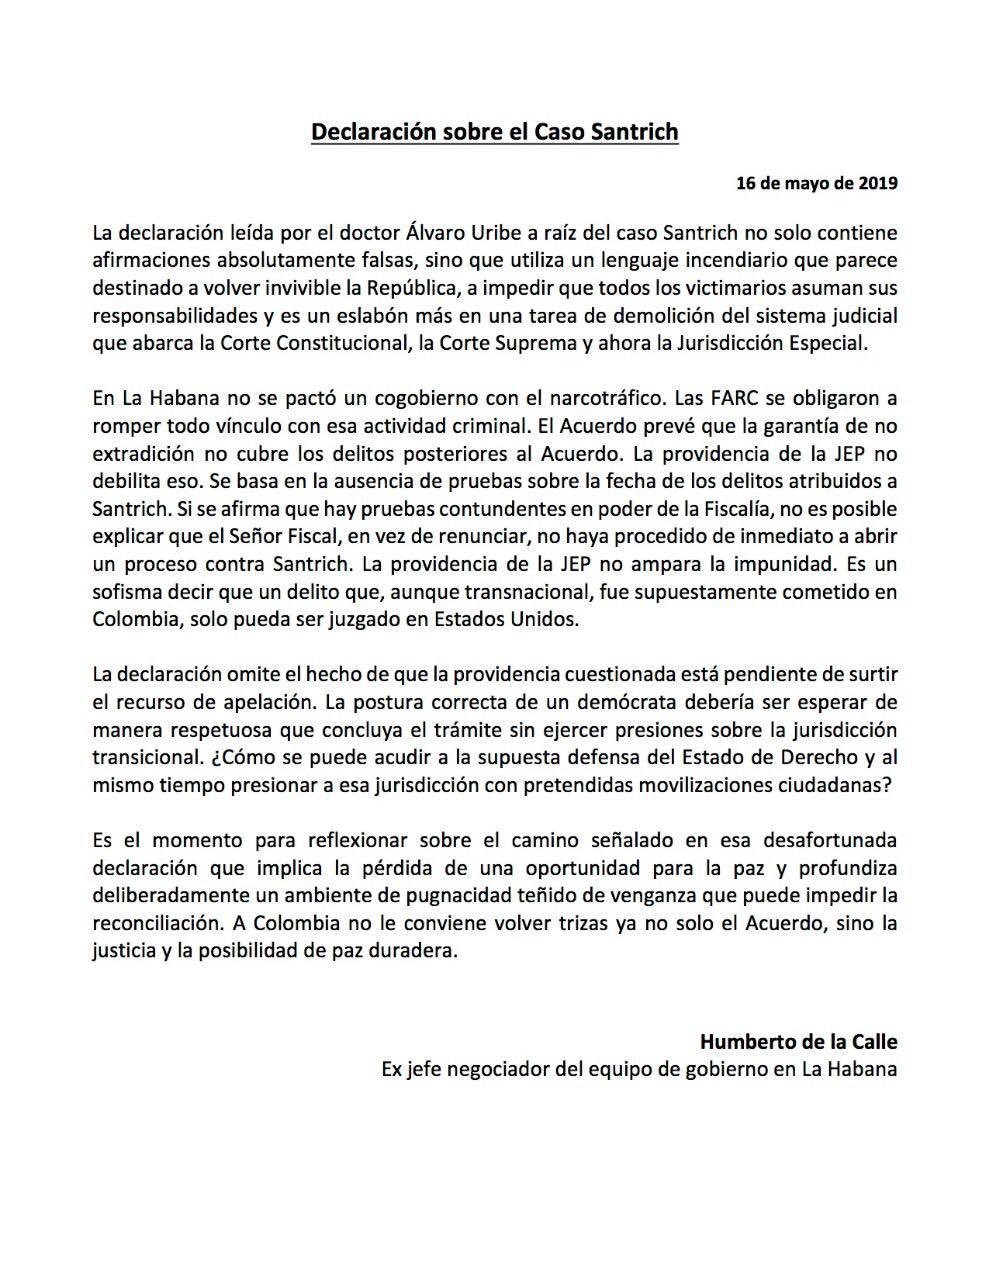 Declaración de Humberto De la Calle sobre el caso Santrich.